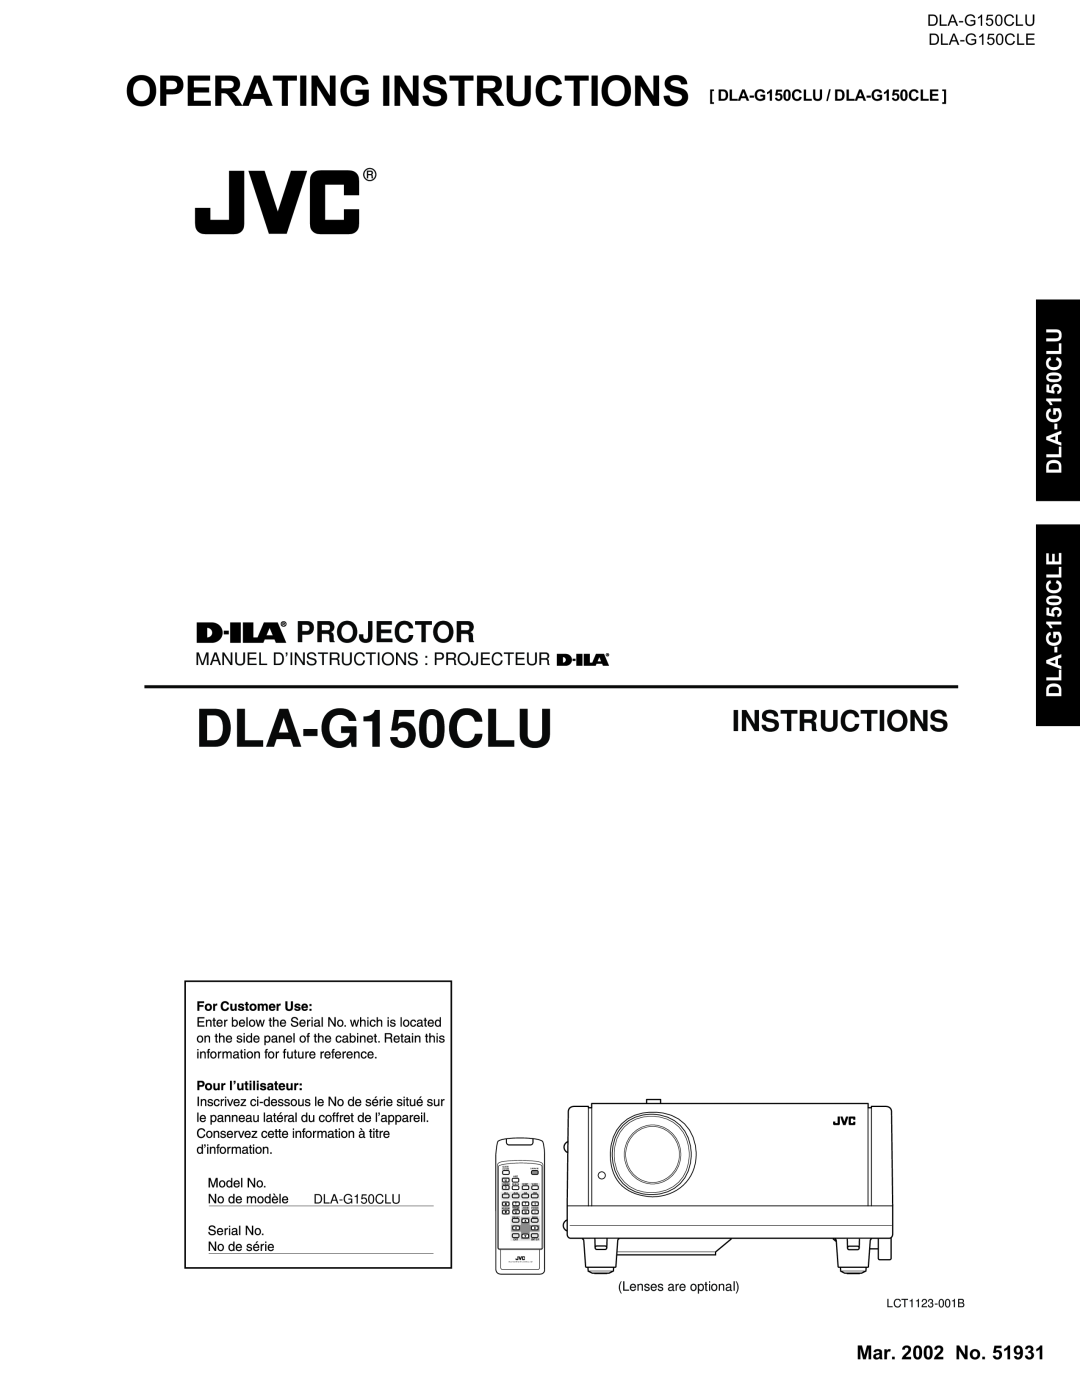 JVC manual Projector, DLA-G150CLU DLA-G150CLE, OPERATING INSTRUCTIONS DLA-G150CLU / DLA-G150CLE, Instructions 